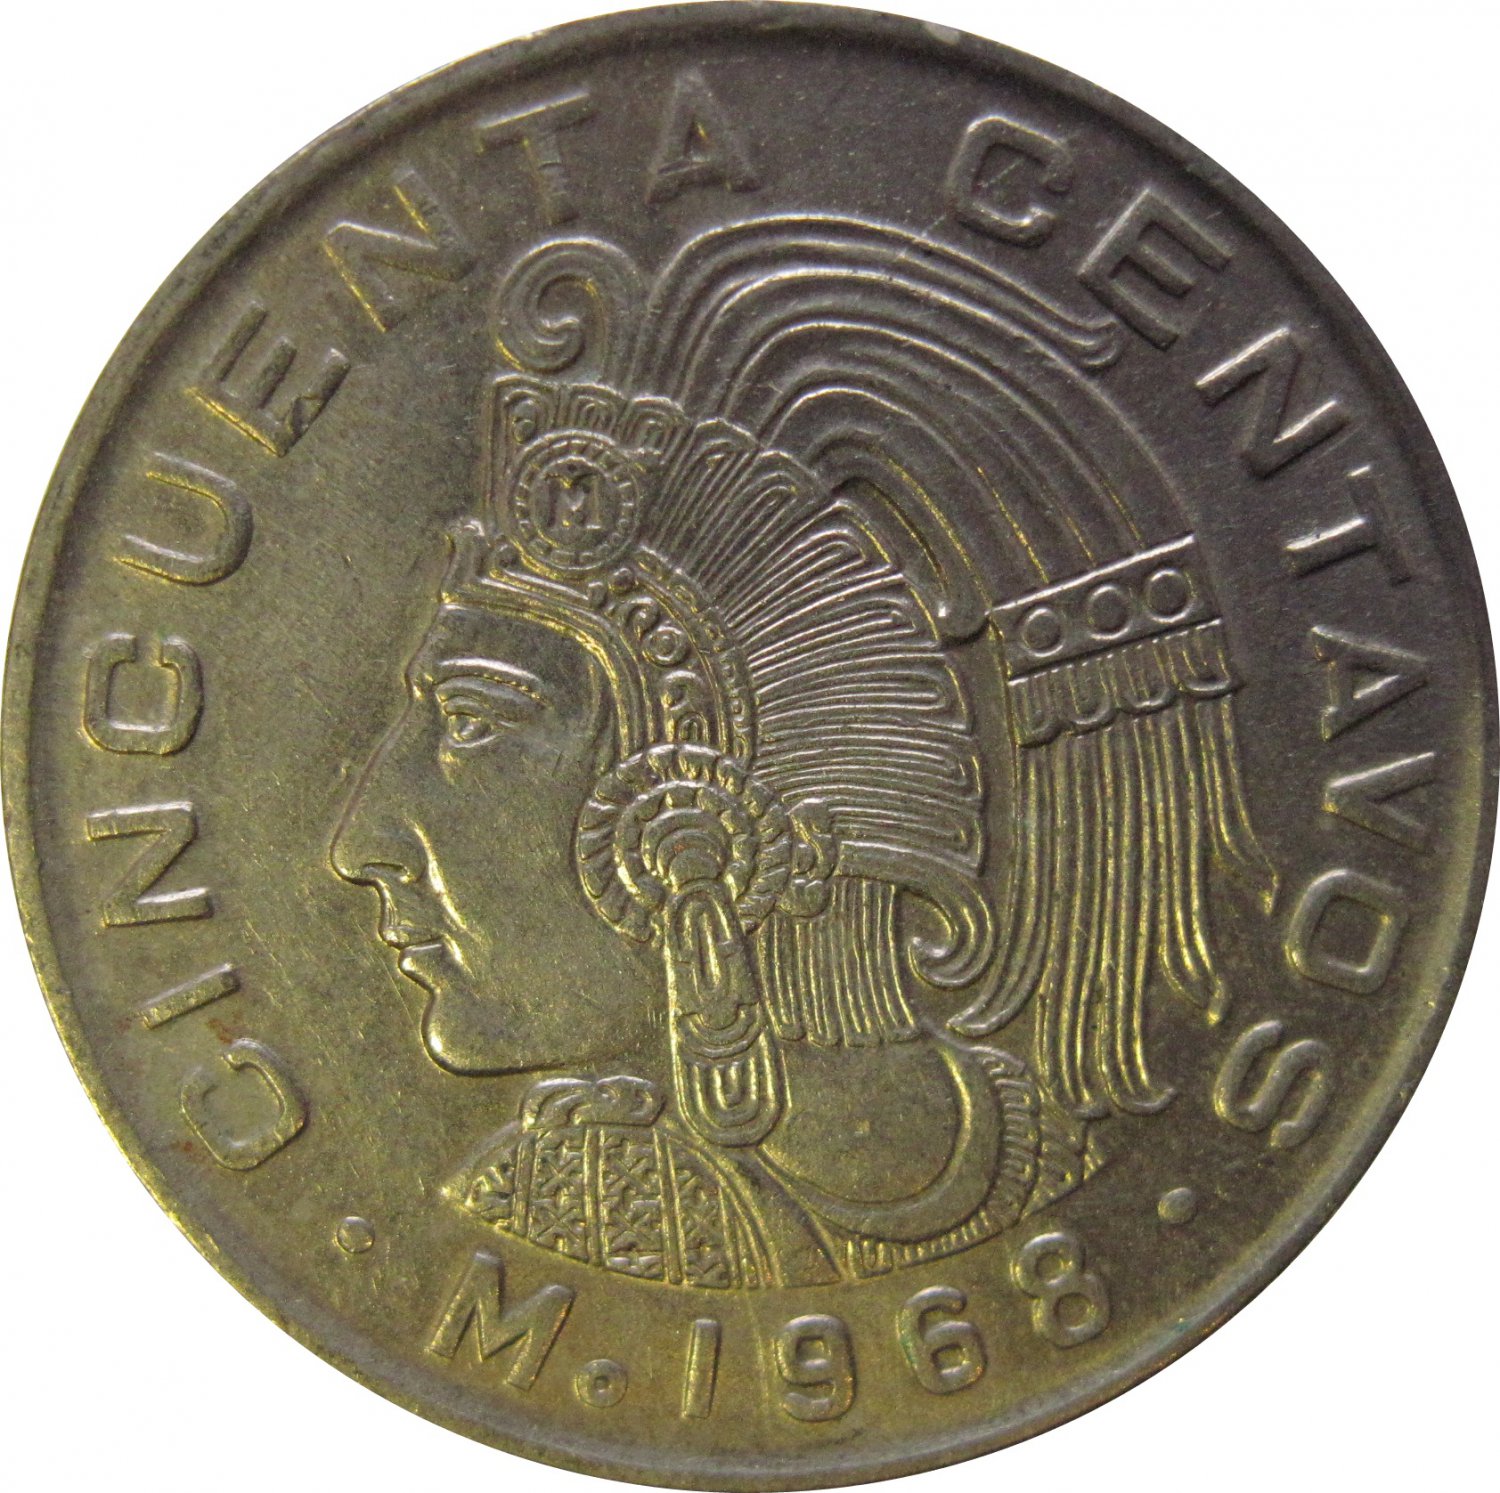 1968 Mexico 50 Centavos